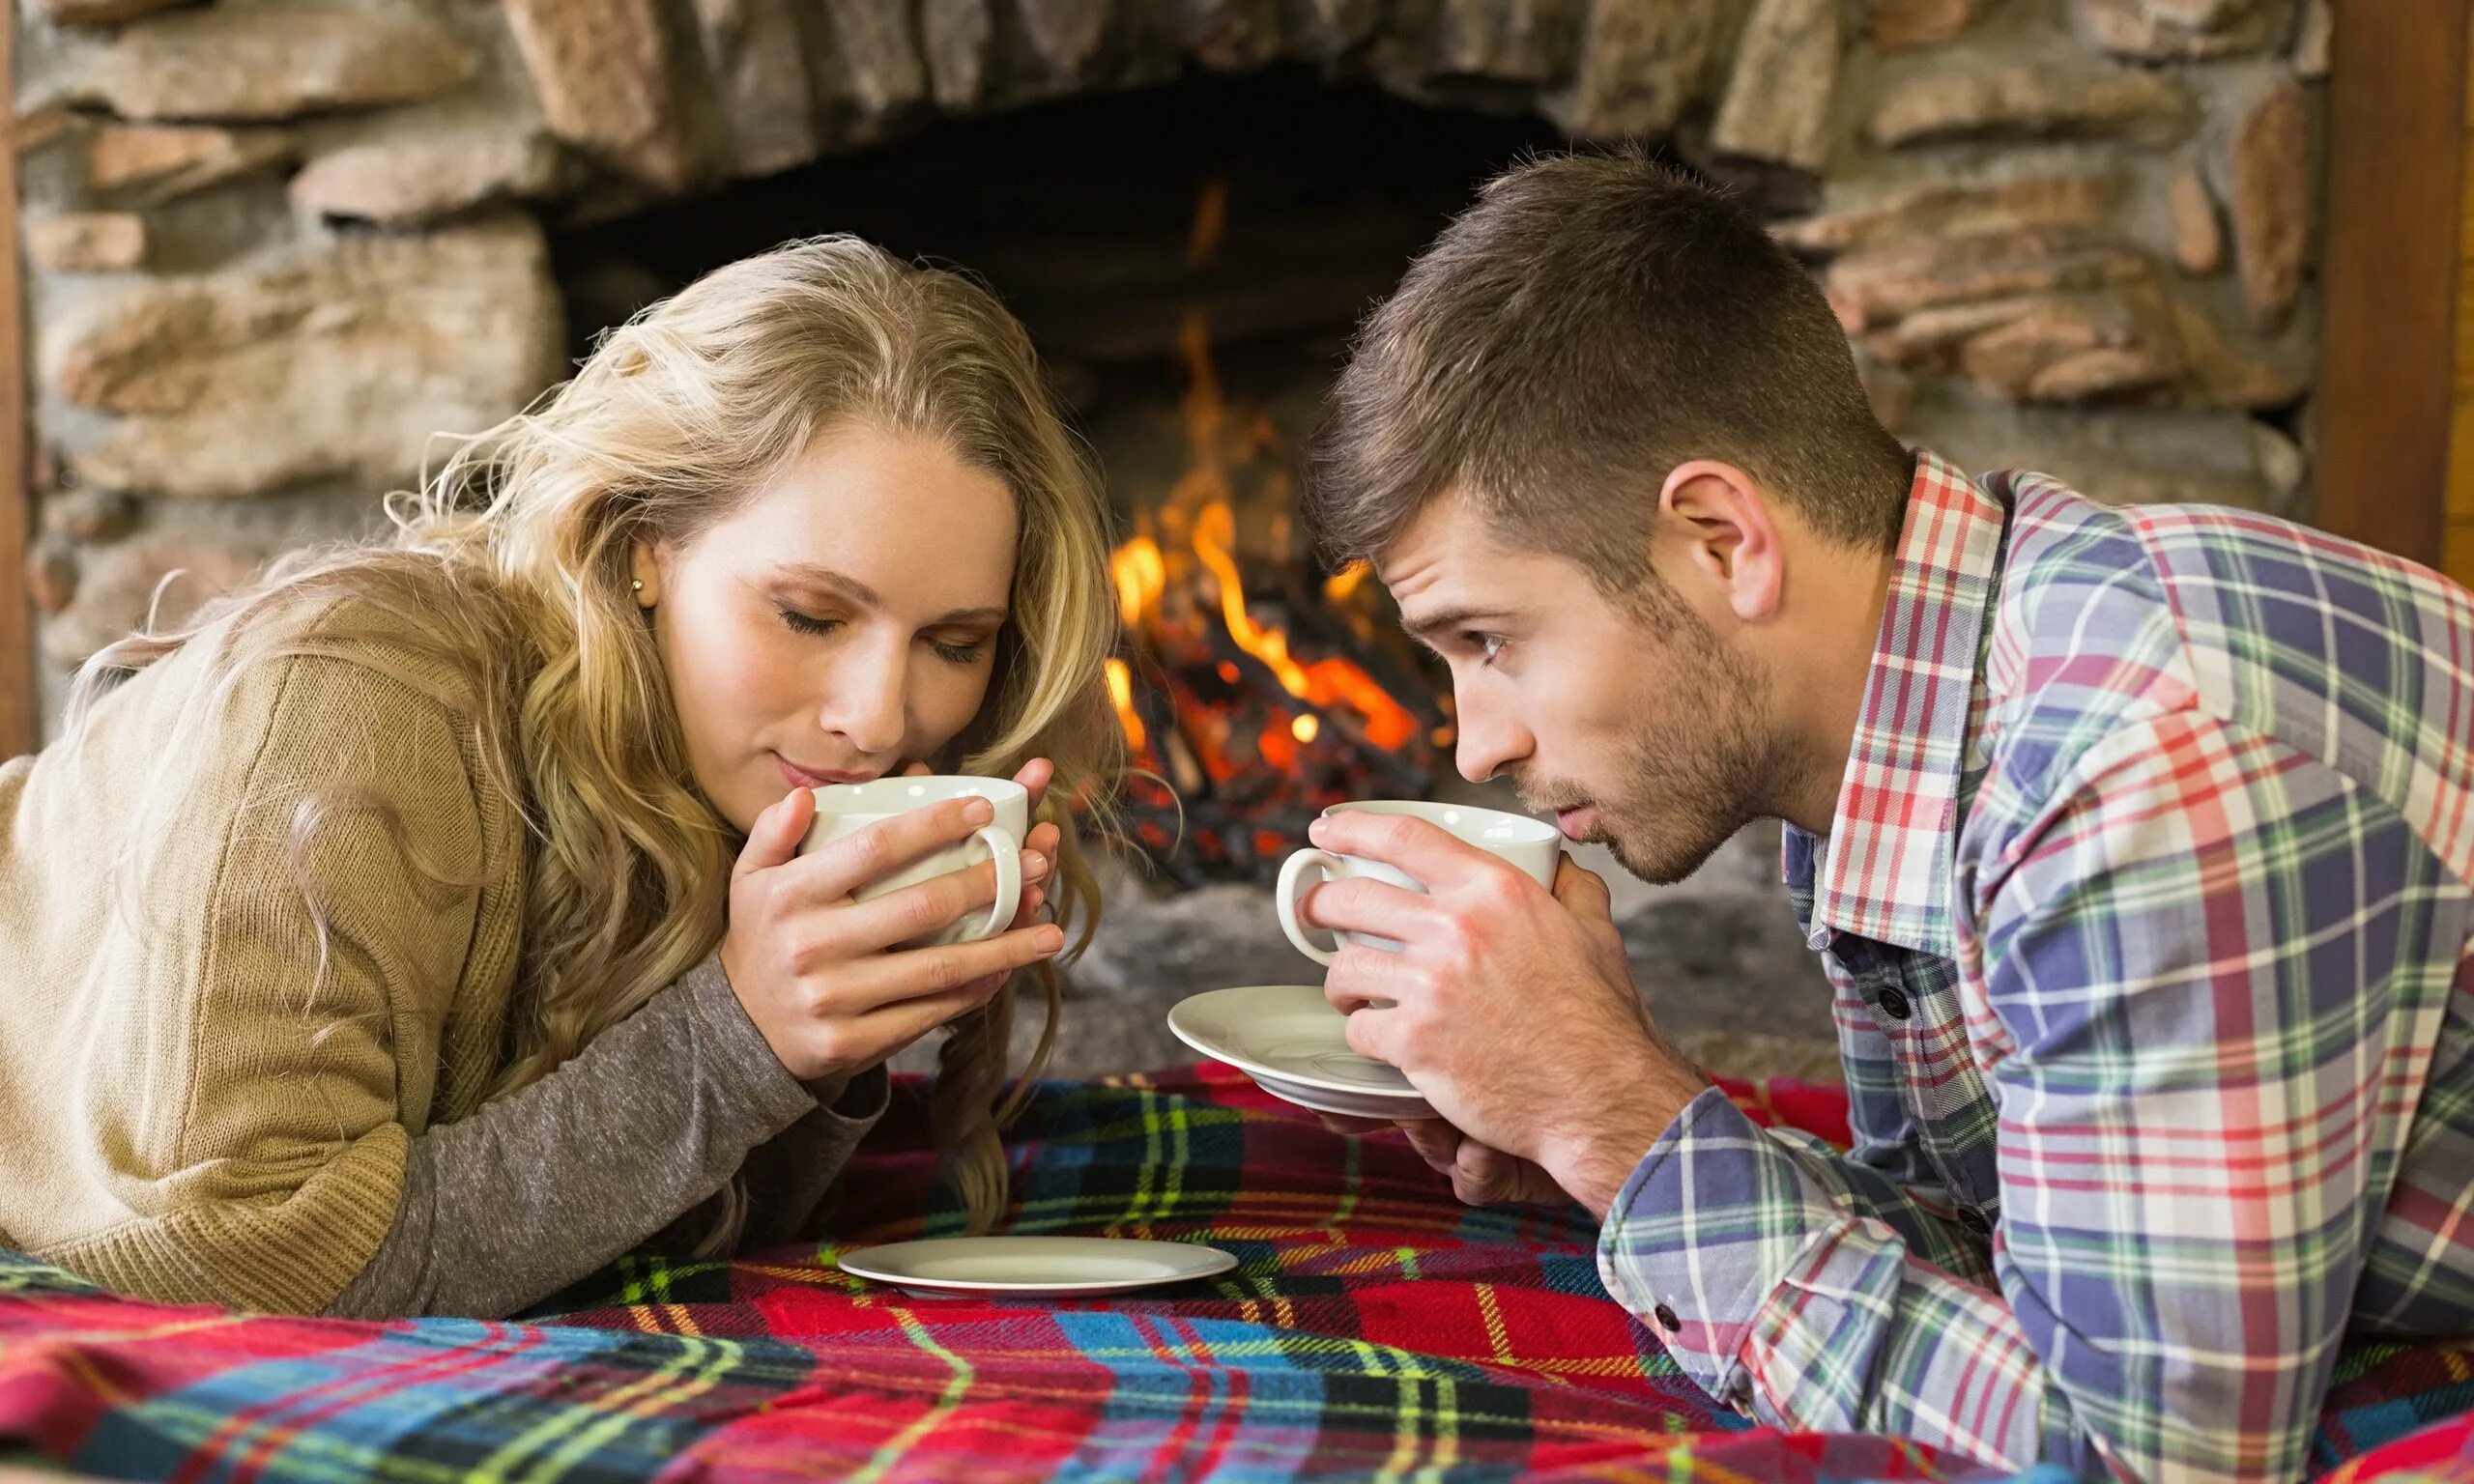 Natural couple. Уютный мужчина. Счастливая семья у камина. Влюбленные в доме. Мужчина и женщина пьют чай.